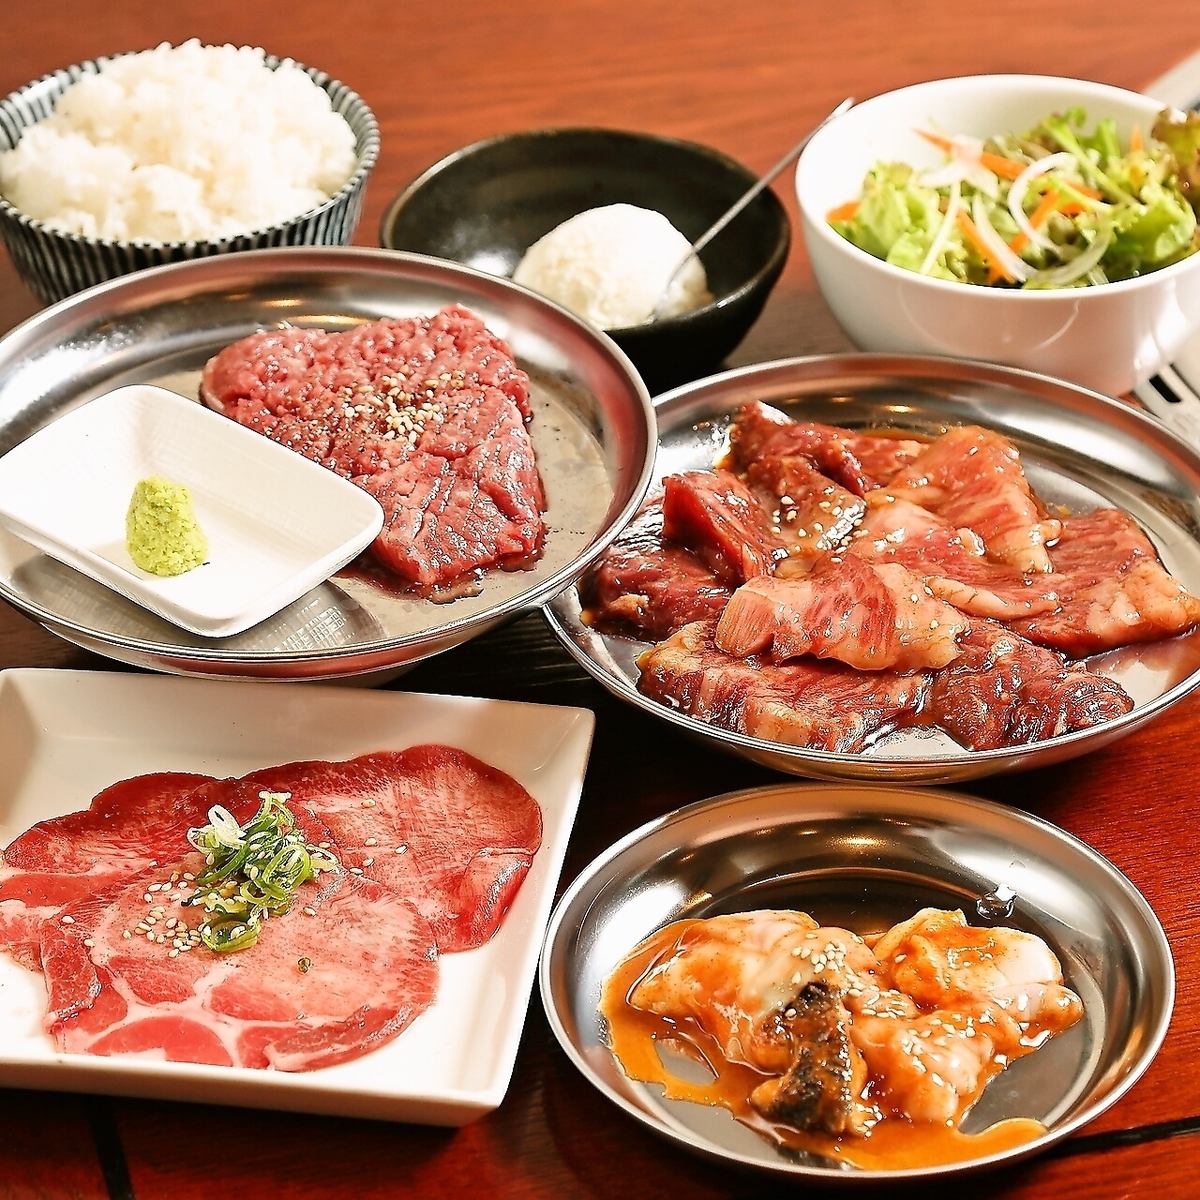 距離湊川公園站步行 5 分鐘，是當地居民的休閒場所。提供美味的新鮮日本牛肉和時令當地酒的烤肉店！